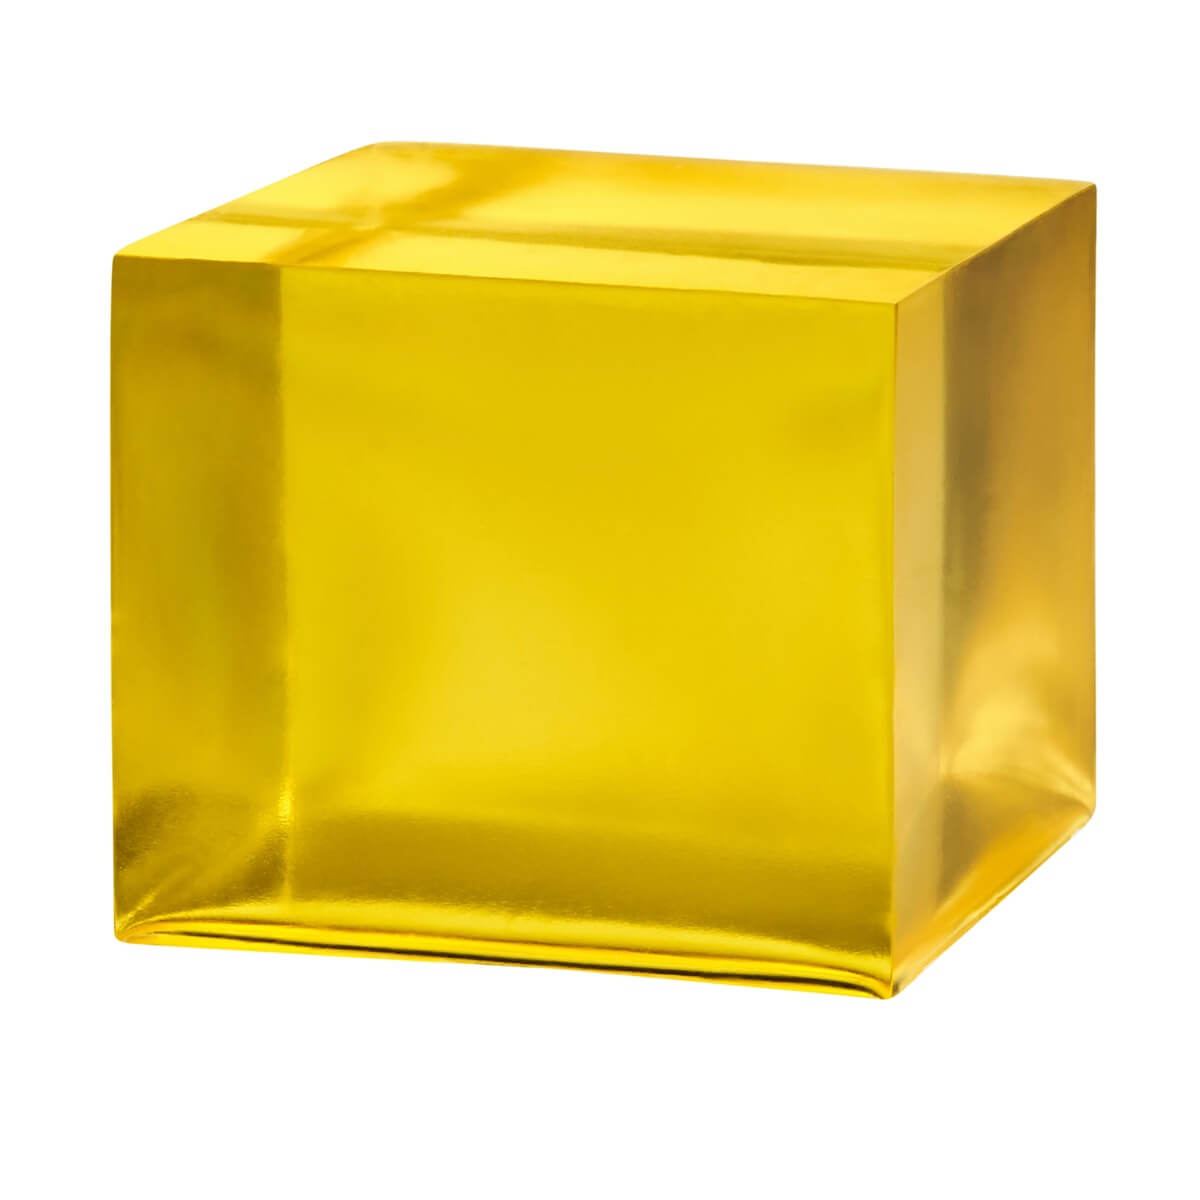 Liquid-Golden-Yellow-Epoxy-Cube